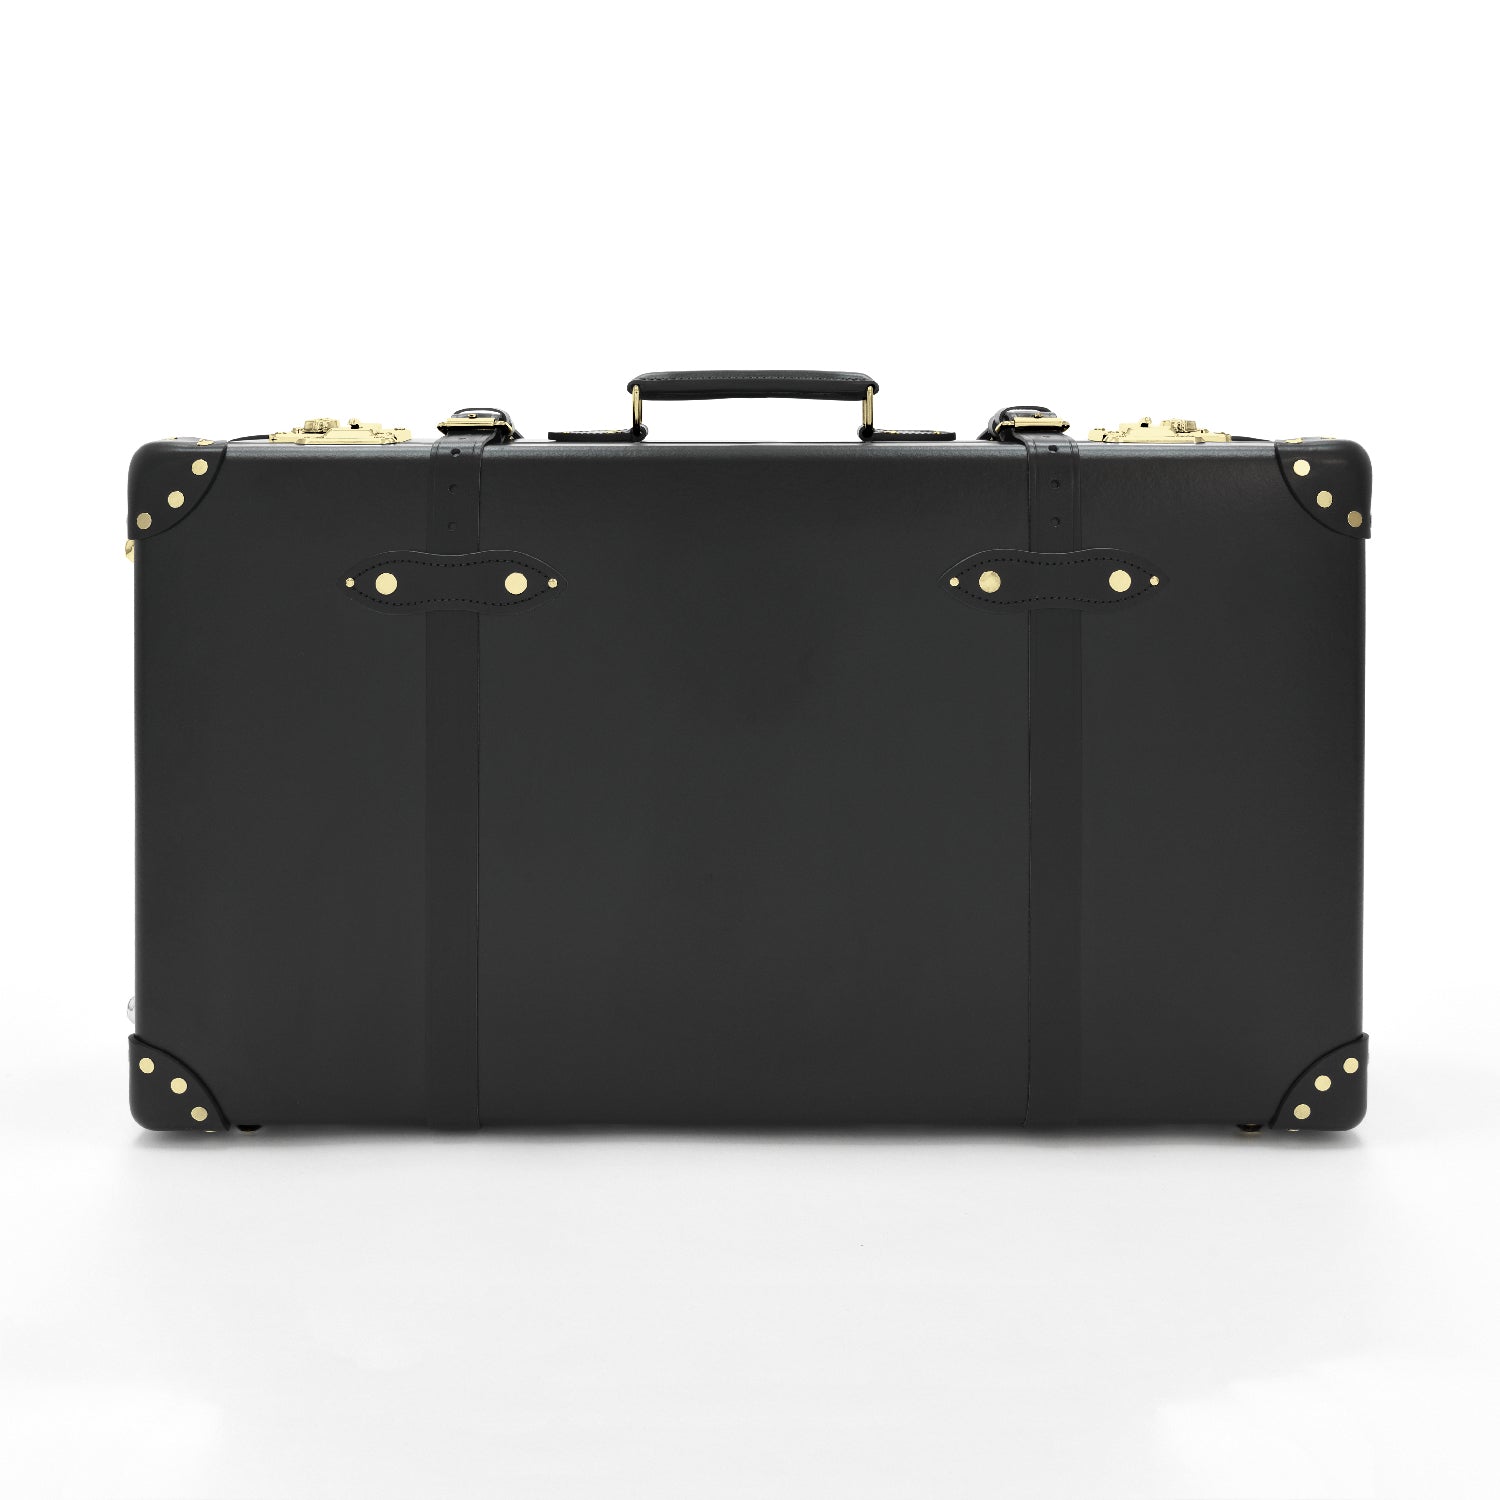 センテナリー · ラージ スーツケース | ブラック